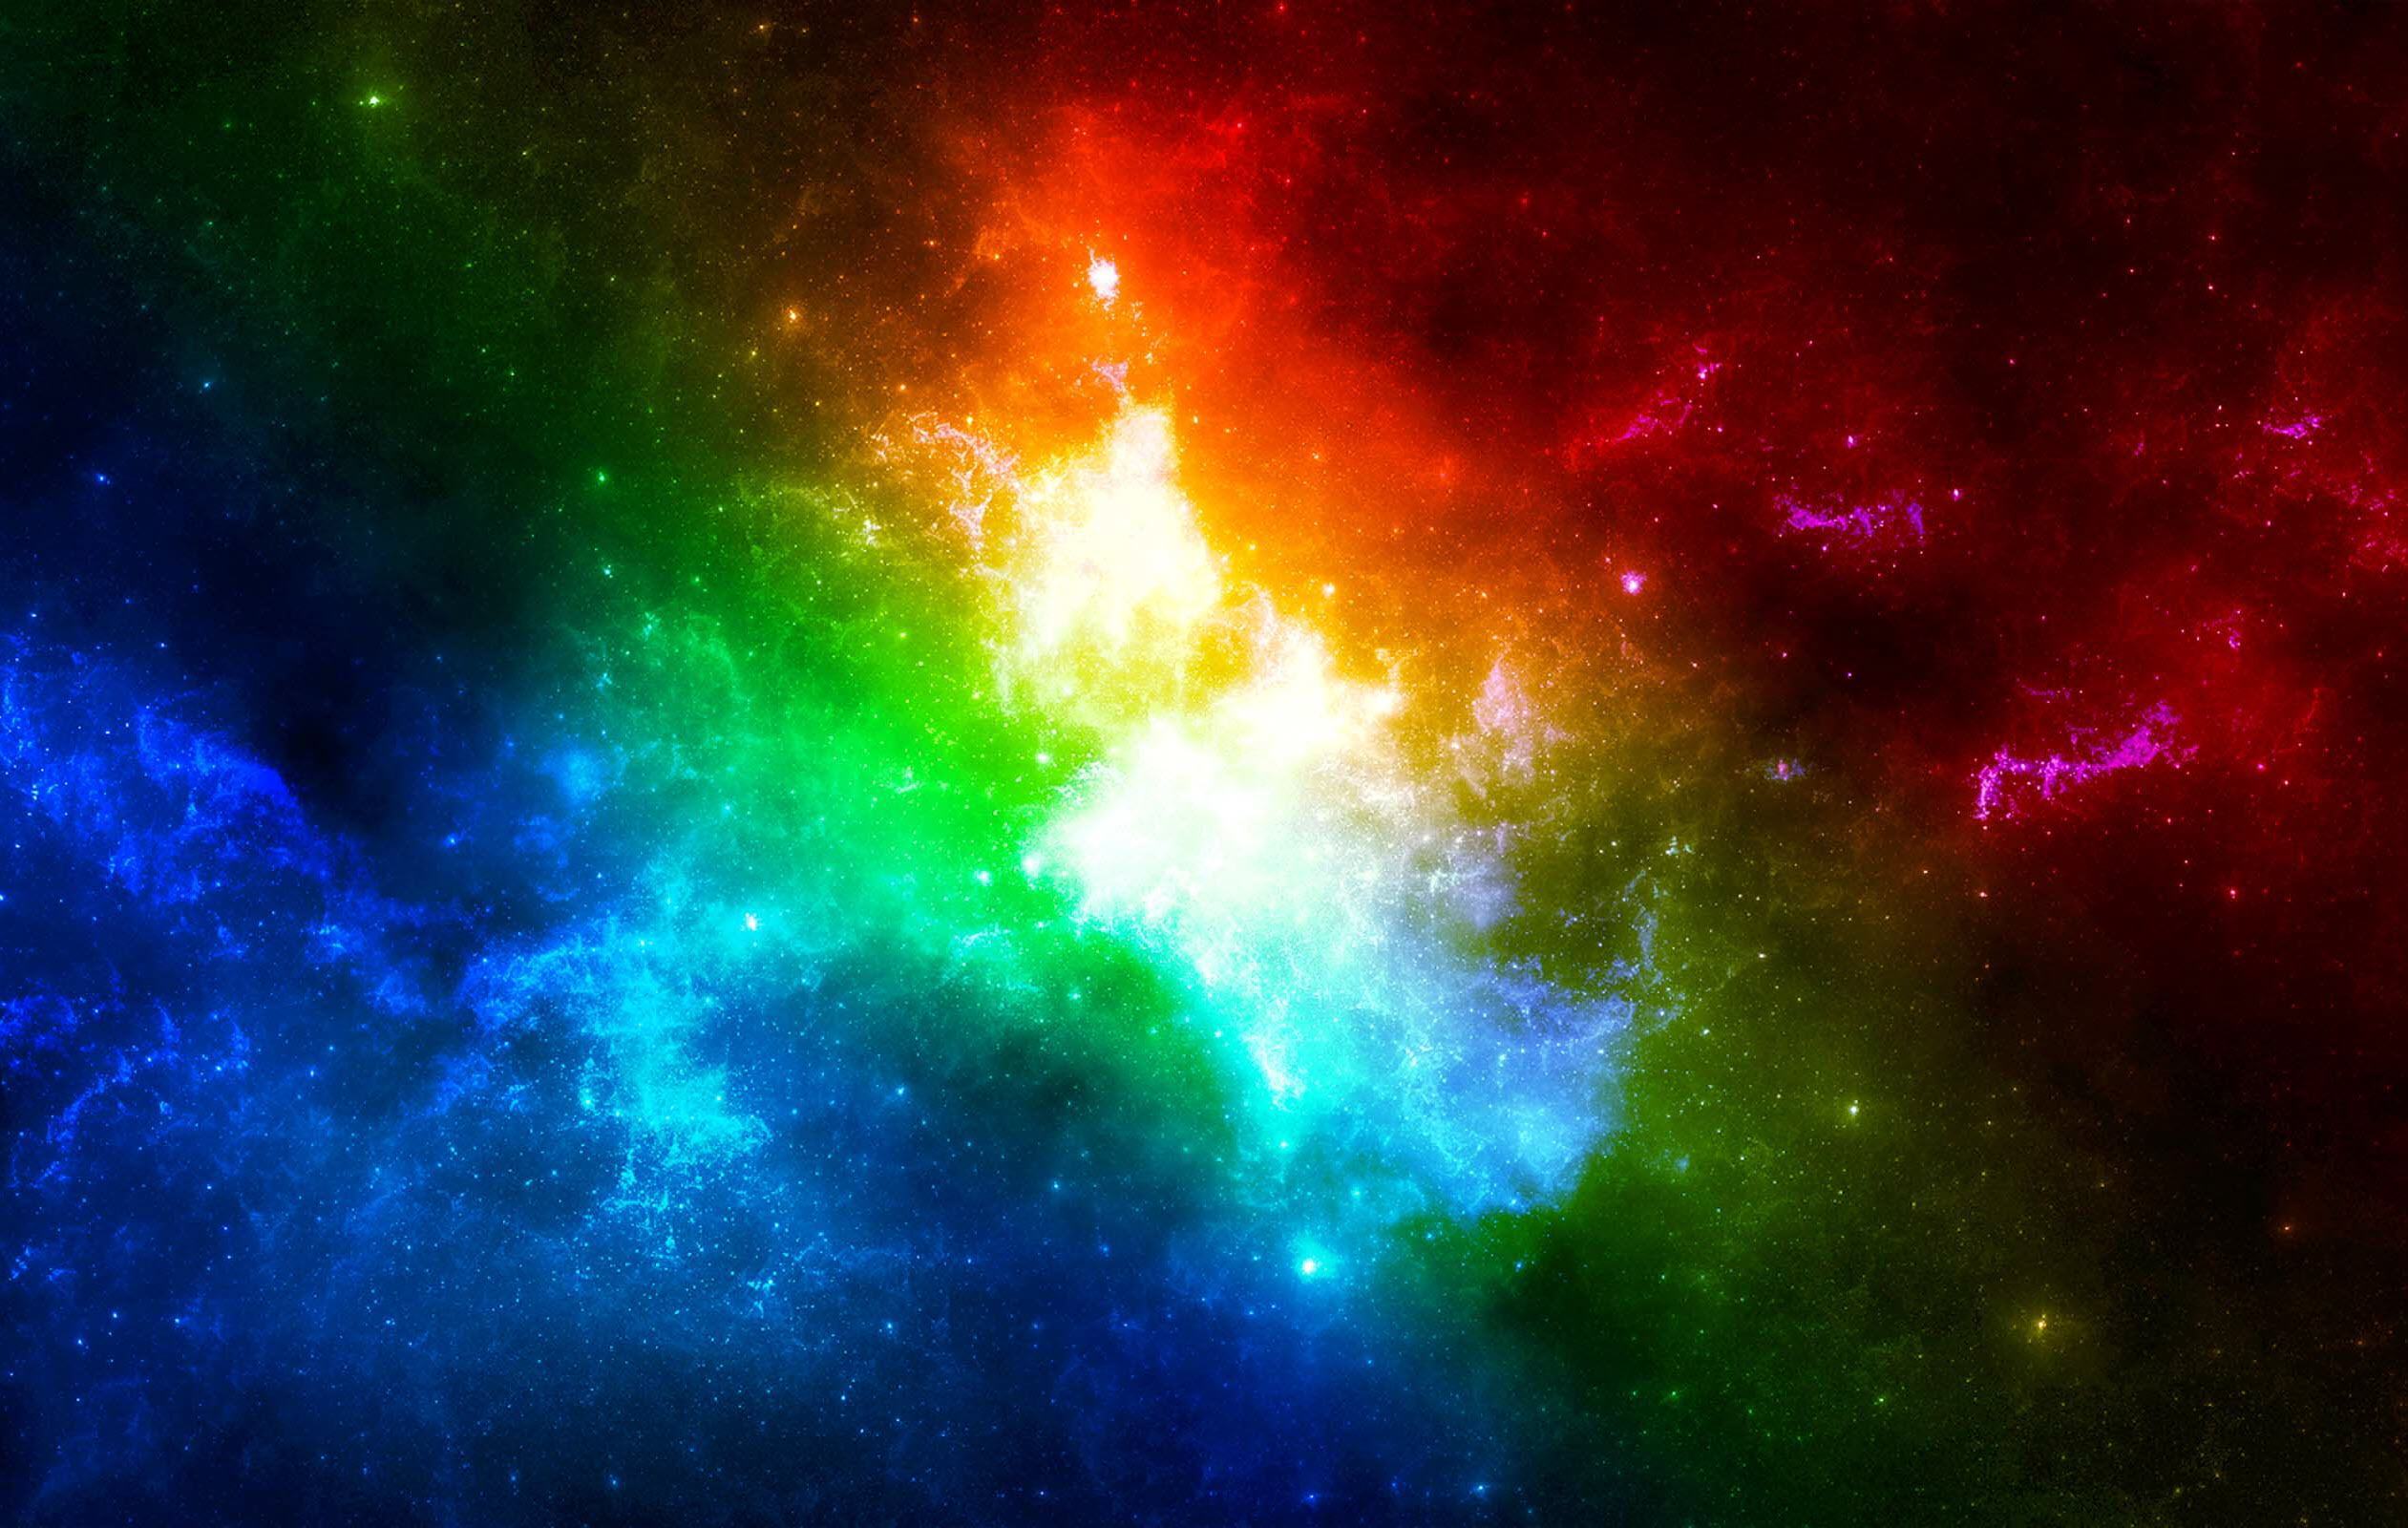 Thiết kế hình nền vũ trụ và sao băng tinh khiết mang đến một sắc thái độc đáo và bí ẩn cho điện thoại của bạn. Gambar Galaxy Wallpaper sẽ giúp bạn tận hưởng những vùng trời kỳ lạ và đầy màu sắc từ những vì sao. Đừng bỏ lỡ cơ hội có hình nền đẹp nhất này!